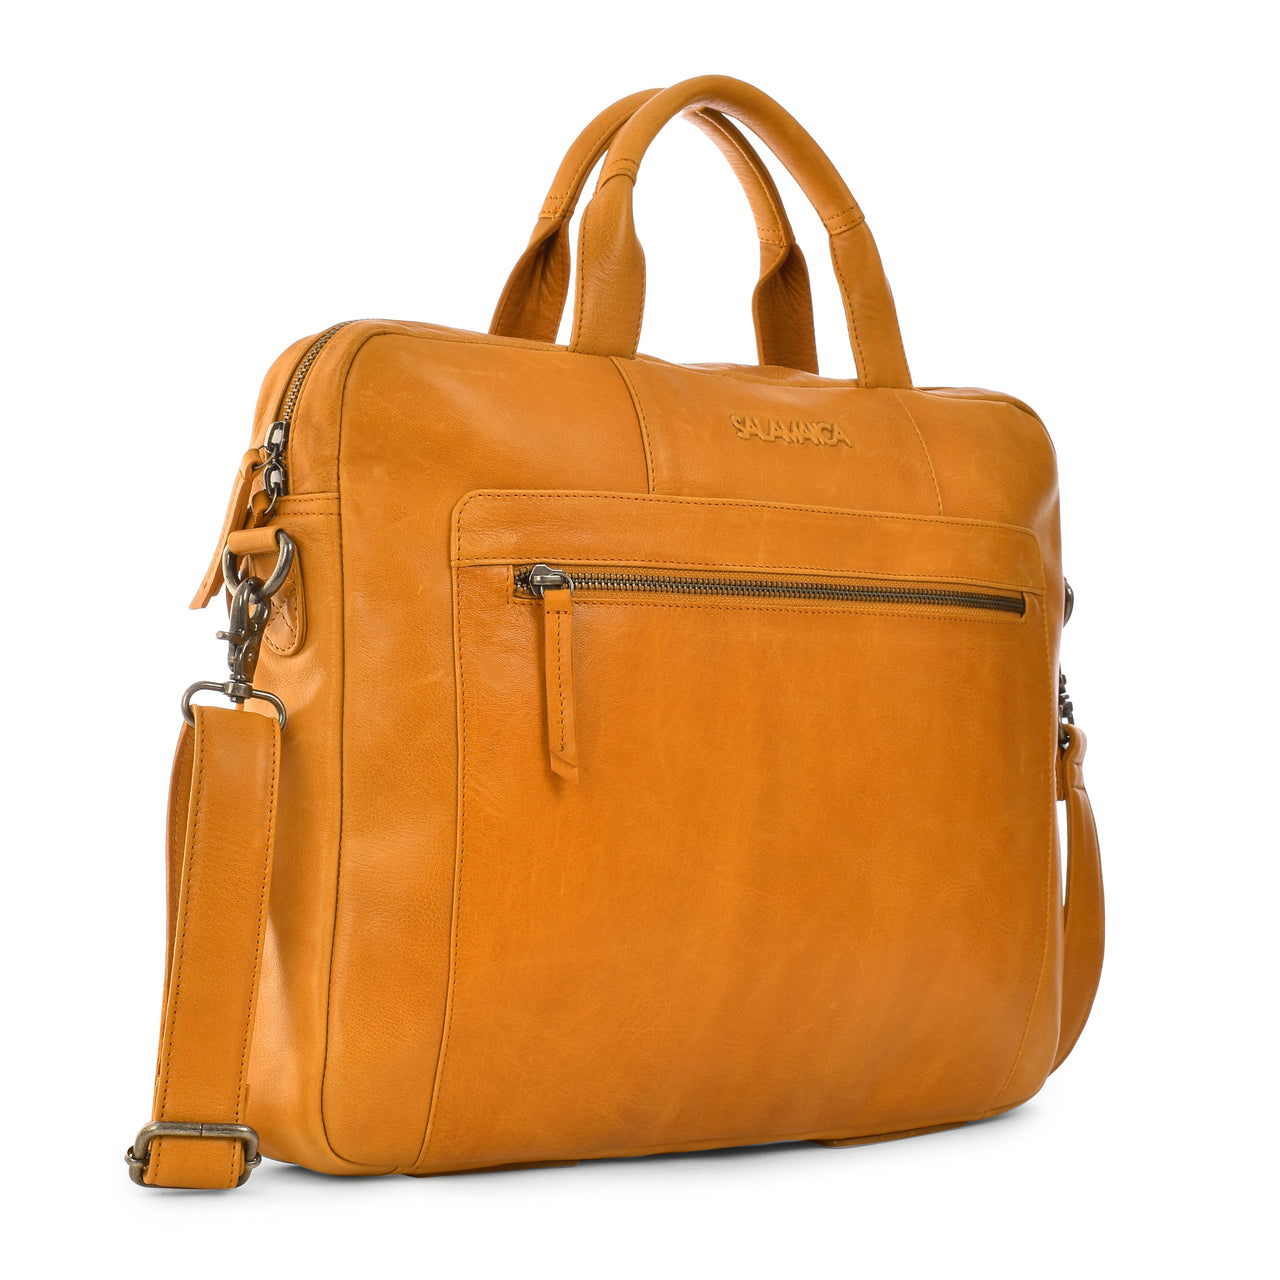 Martin Business Bag - Laptop Bags